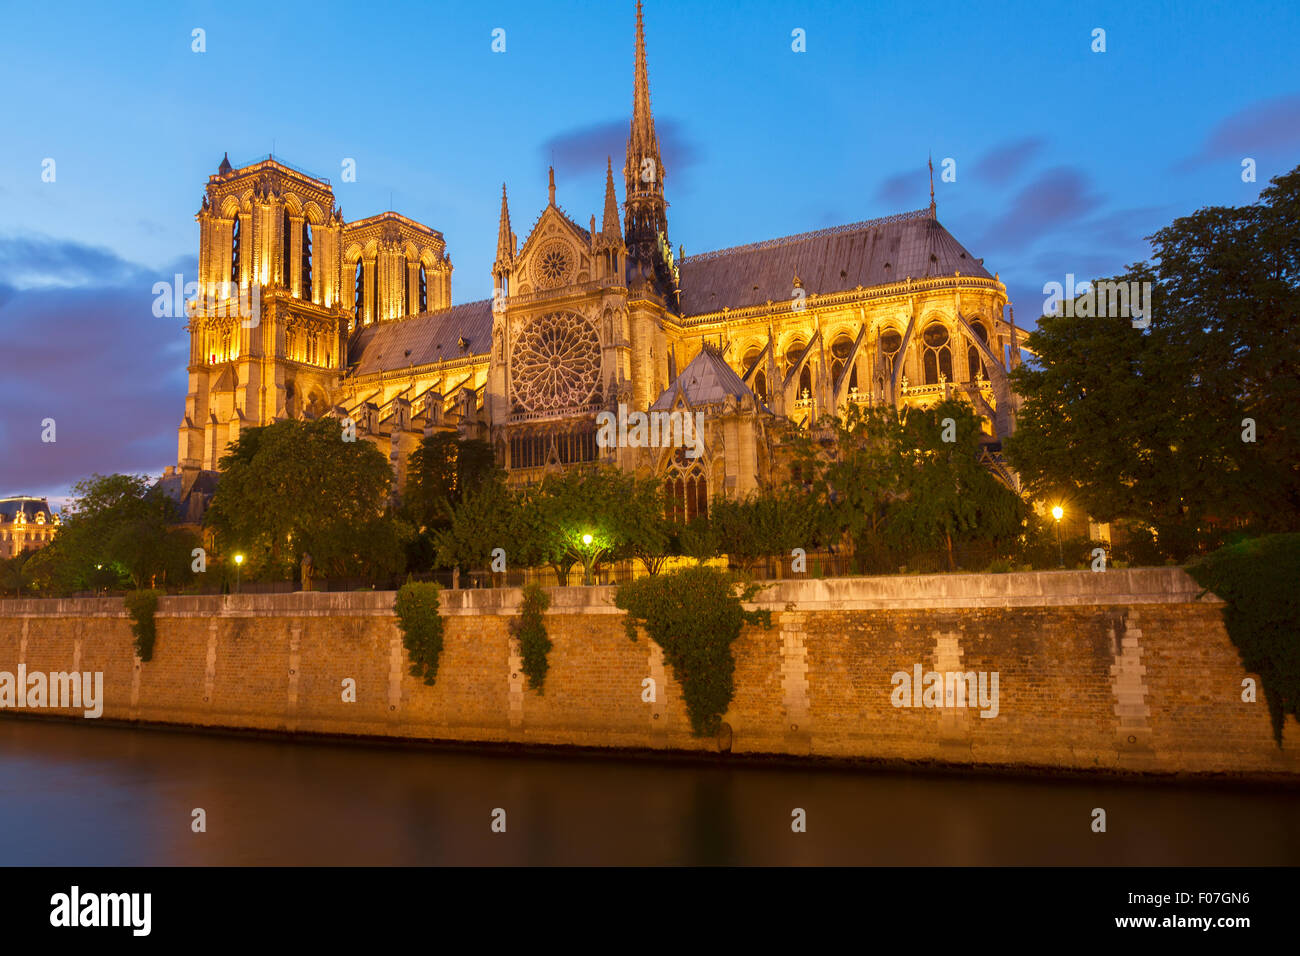 La cathédrale Notre Dame, Paris France Banque D'Images